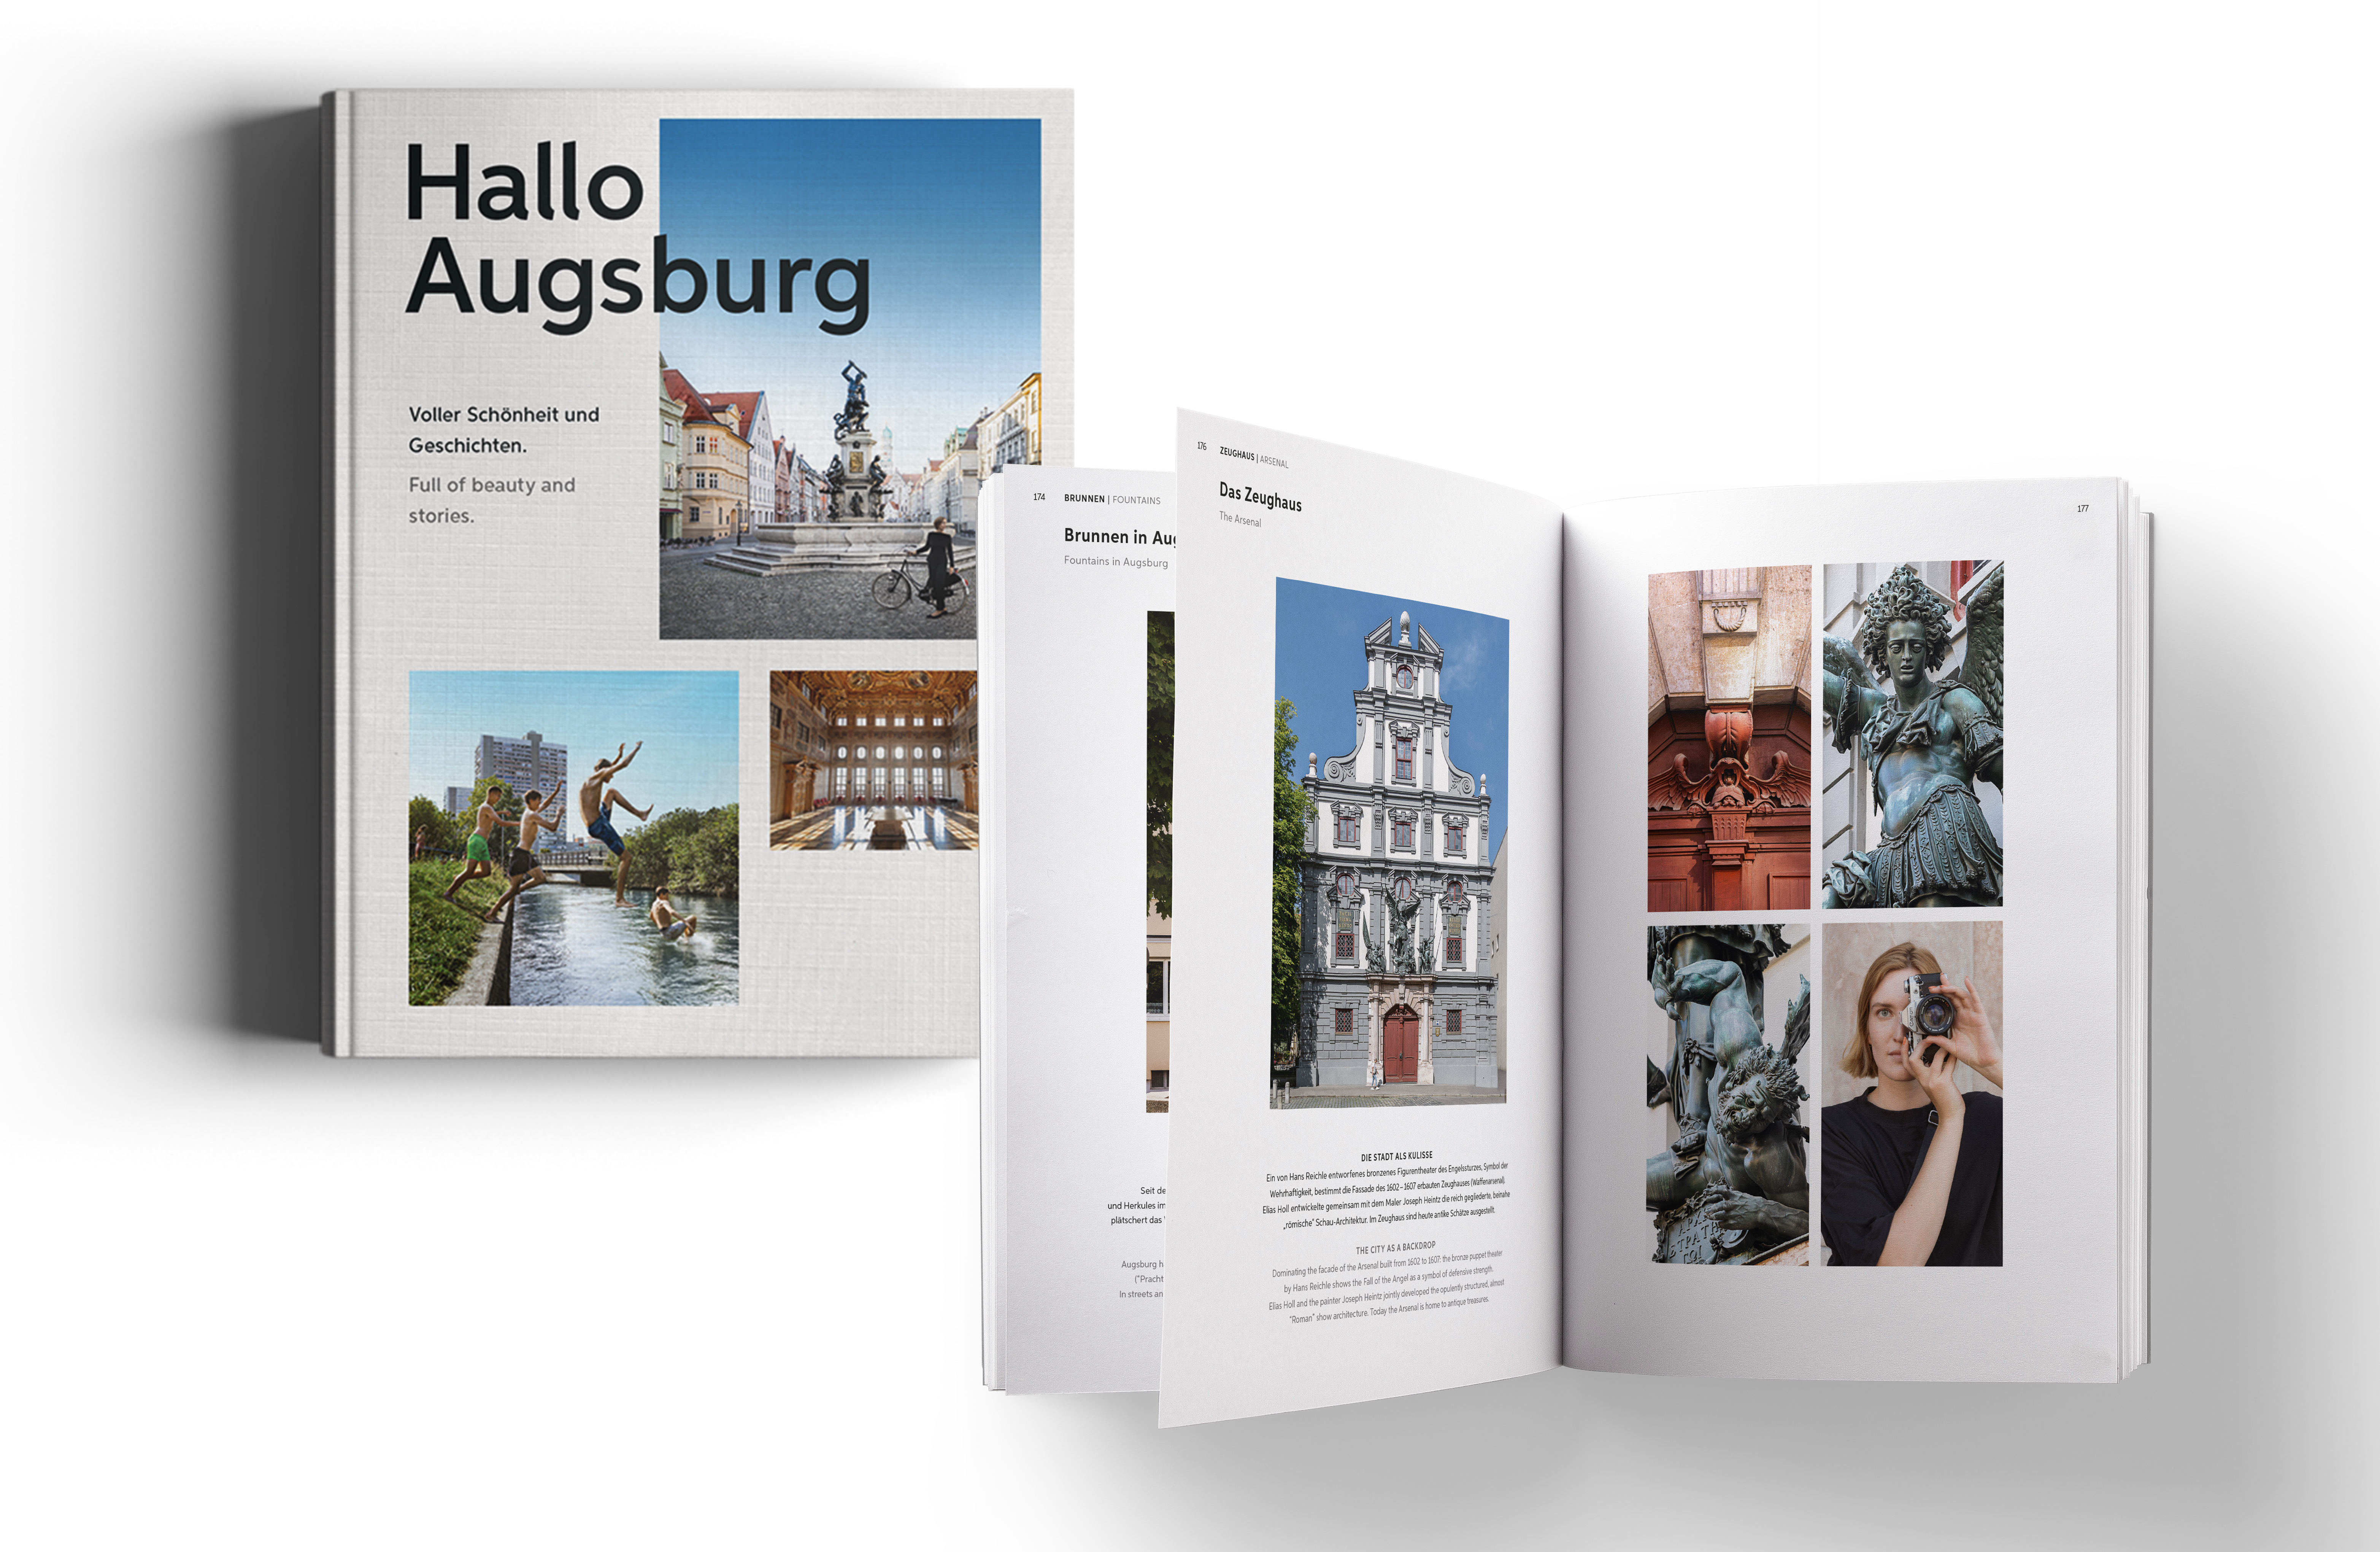 Das Bild zeigt die Vorderseite und zwei Innenseiten des Buchs mit vielen Fotos aus Augsburg